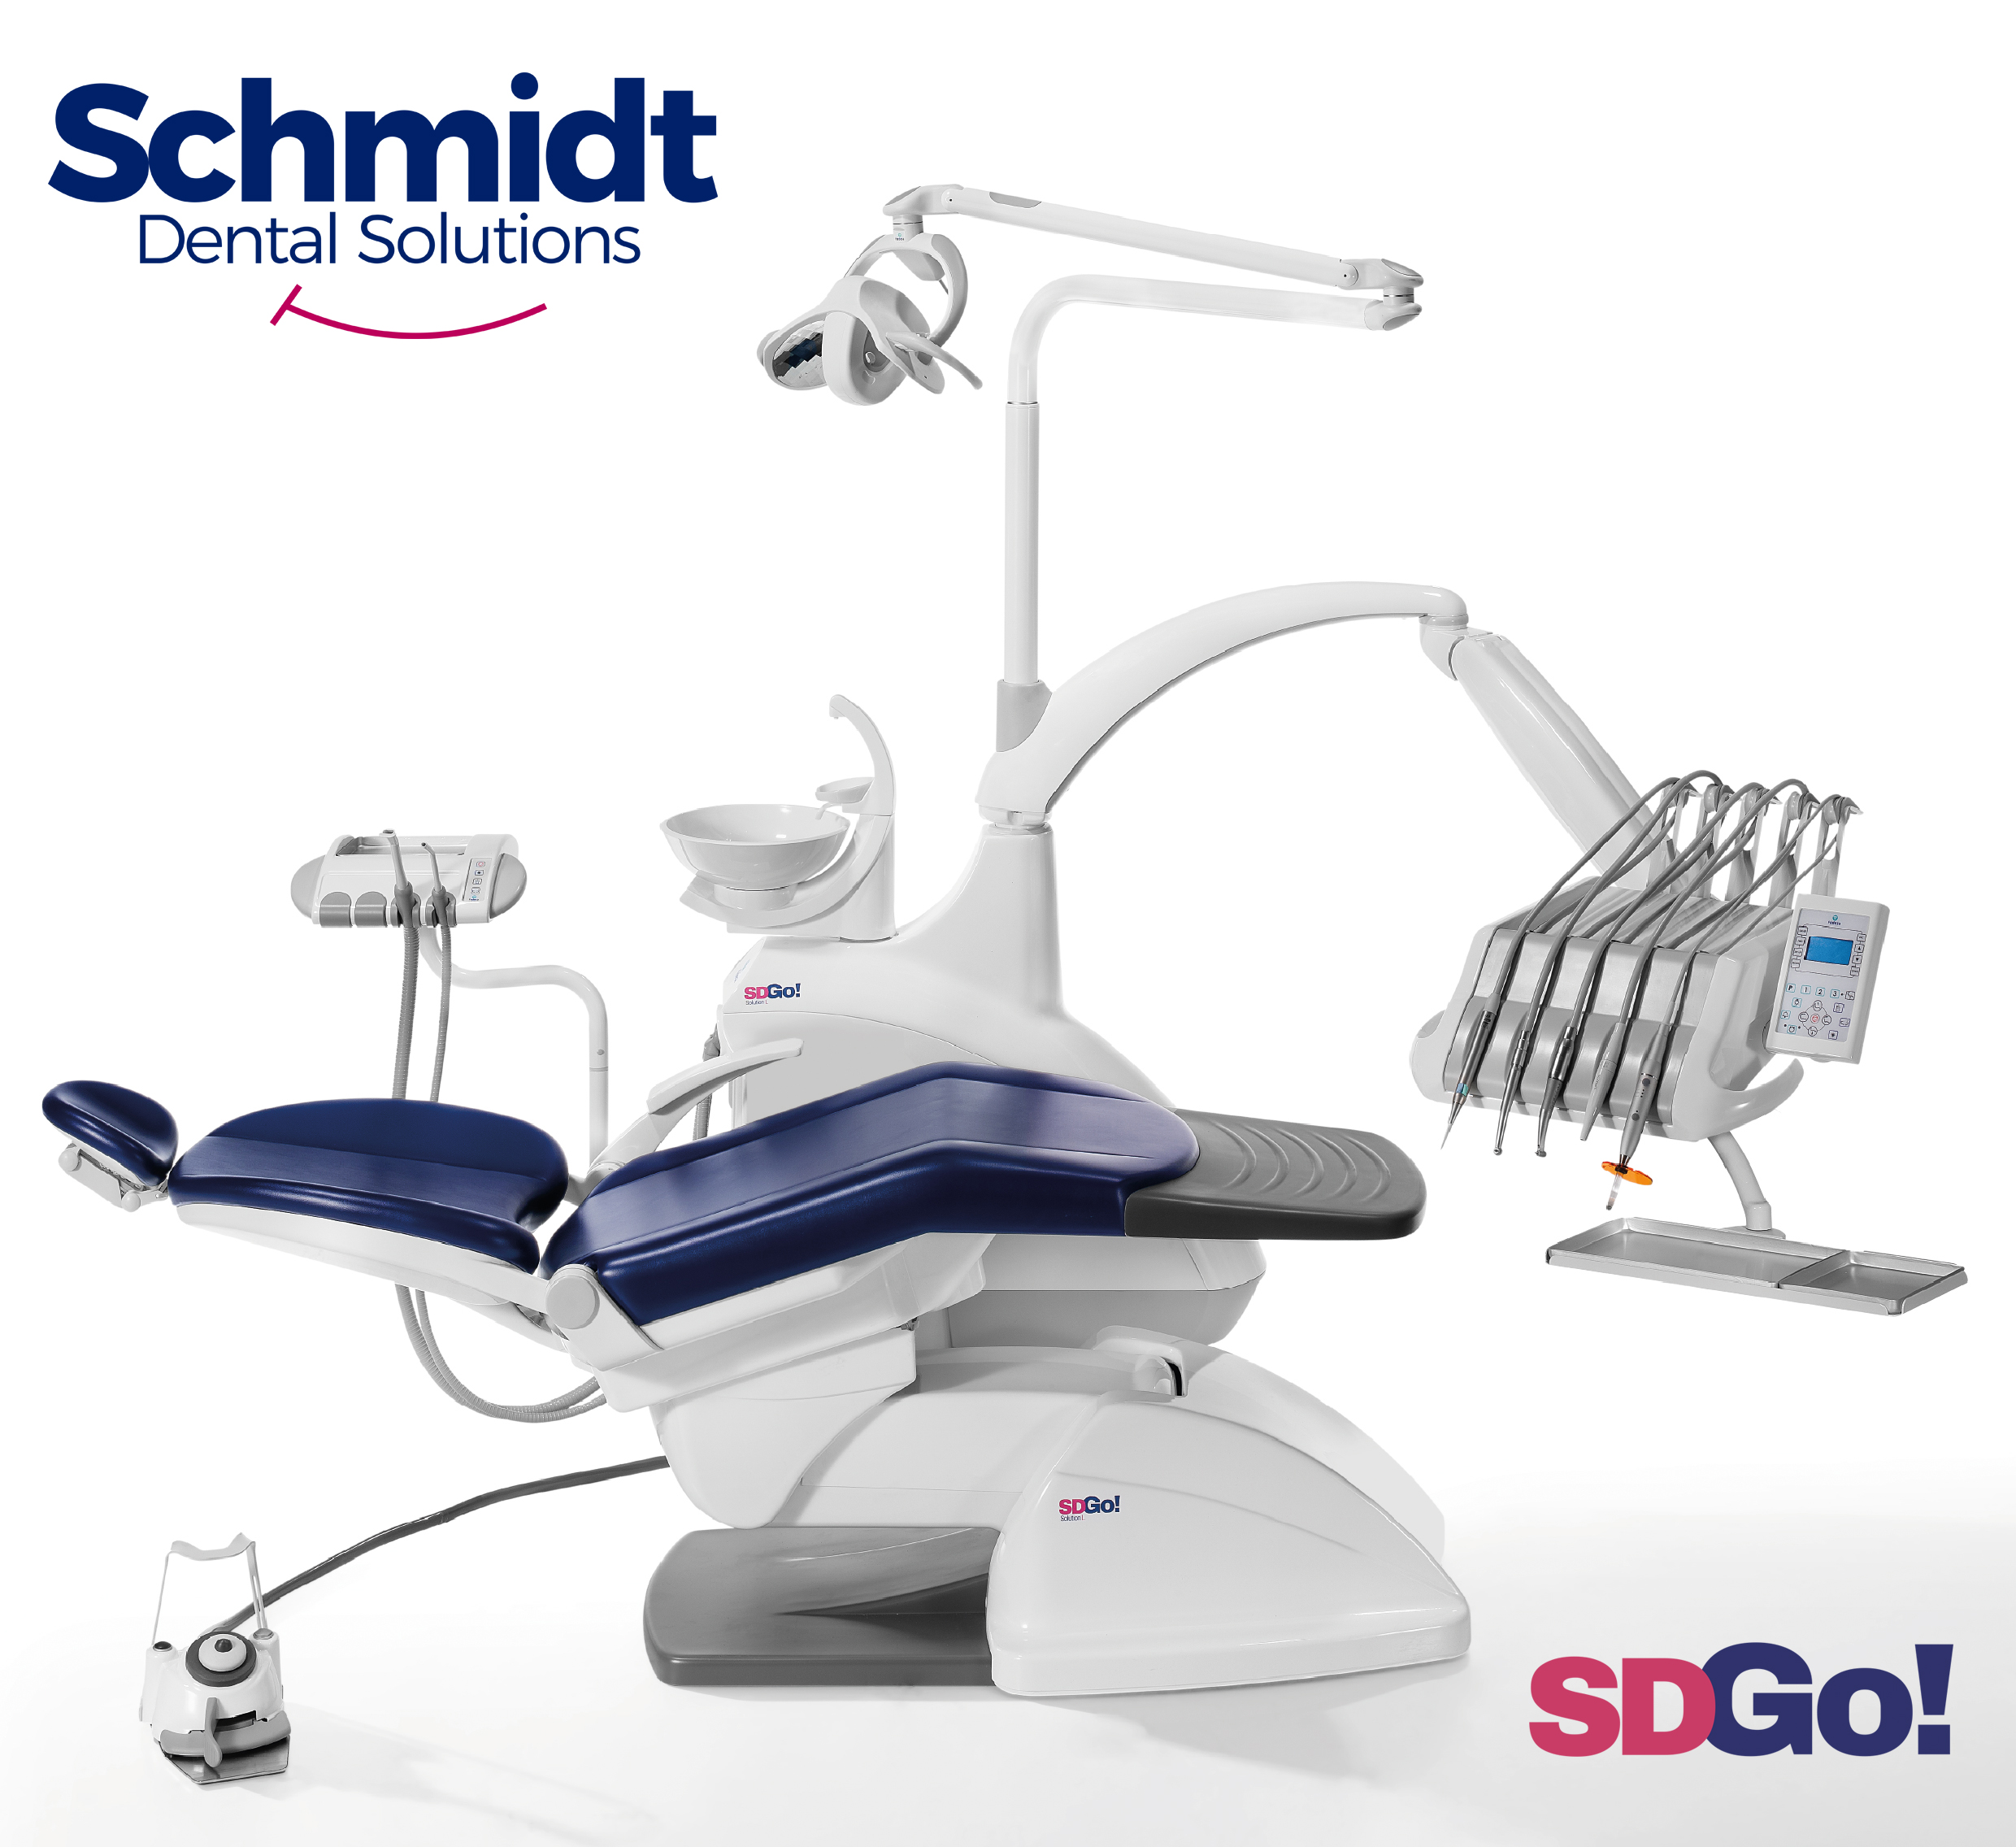 En la imagen, el nuevo equipo dental SD GO!. FOTO: Schmidt Dental Solutions